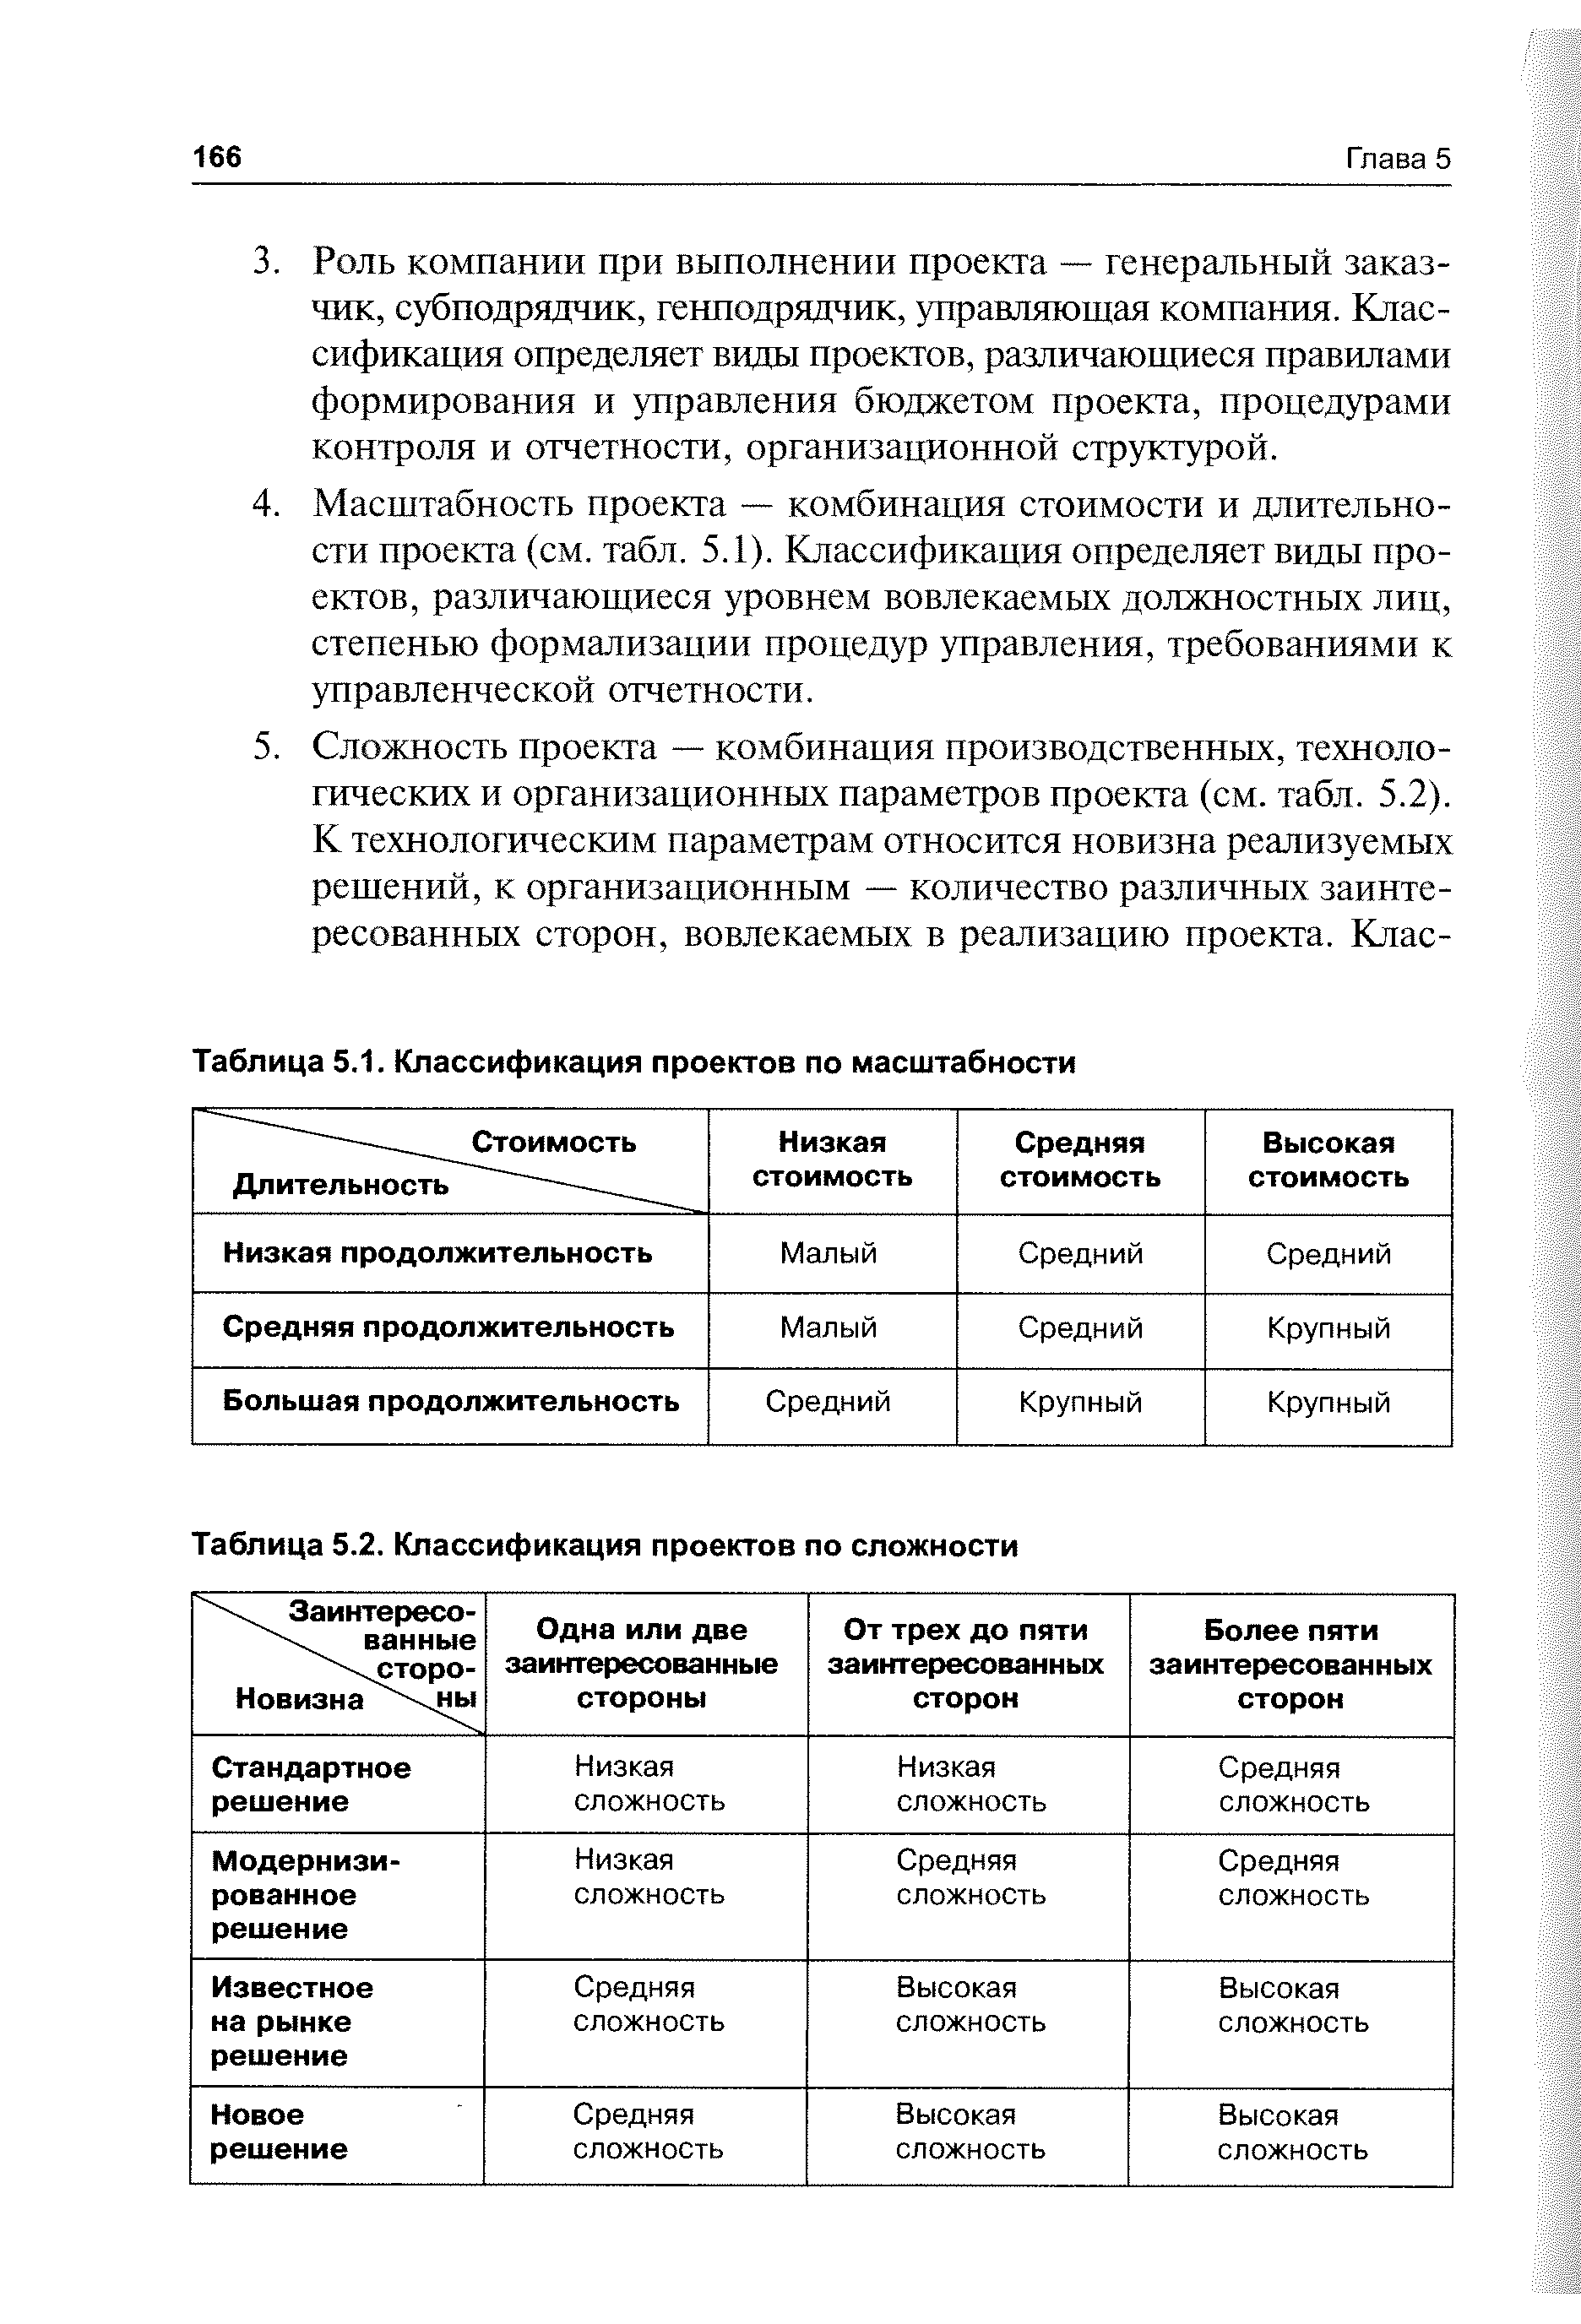 Таблица 5.2. Классификация проектов по сложности
